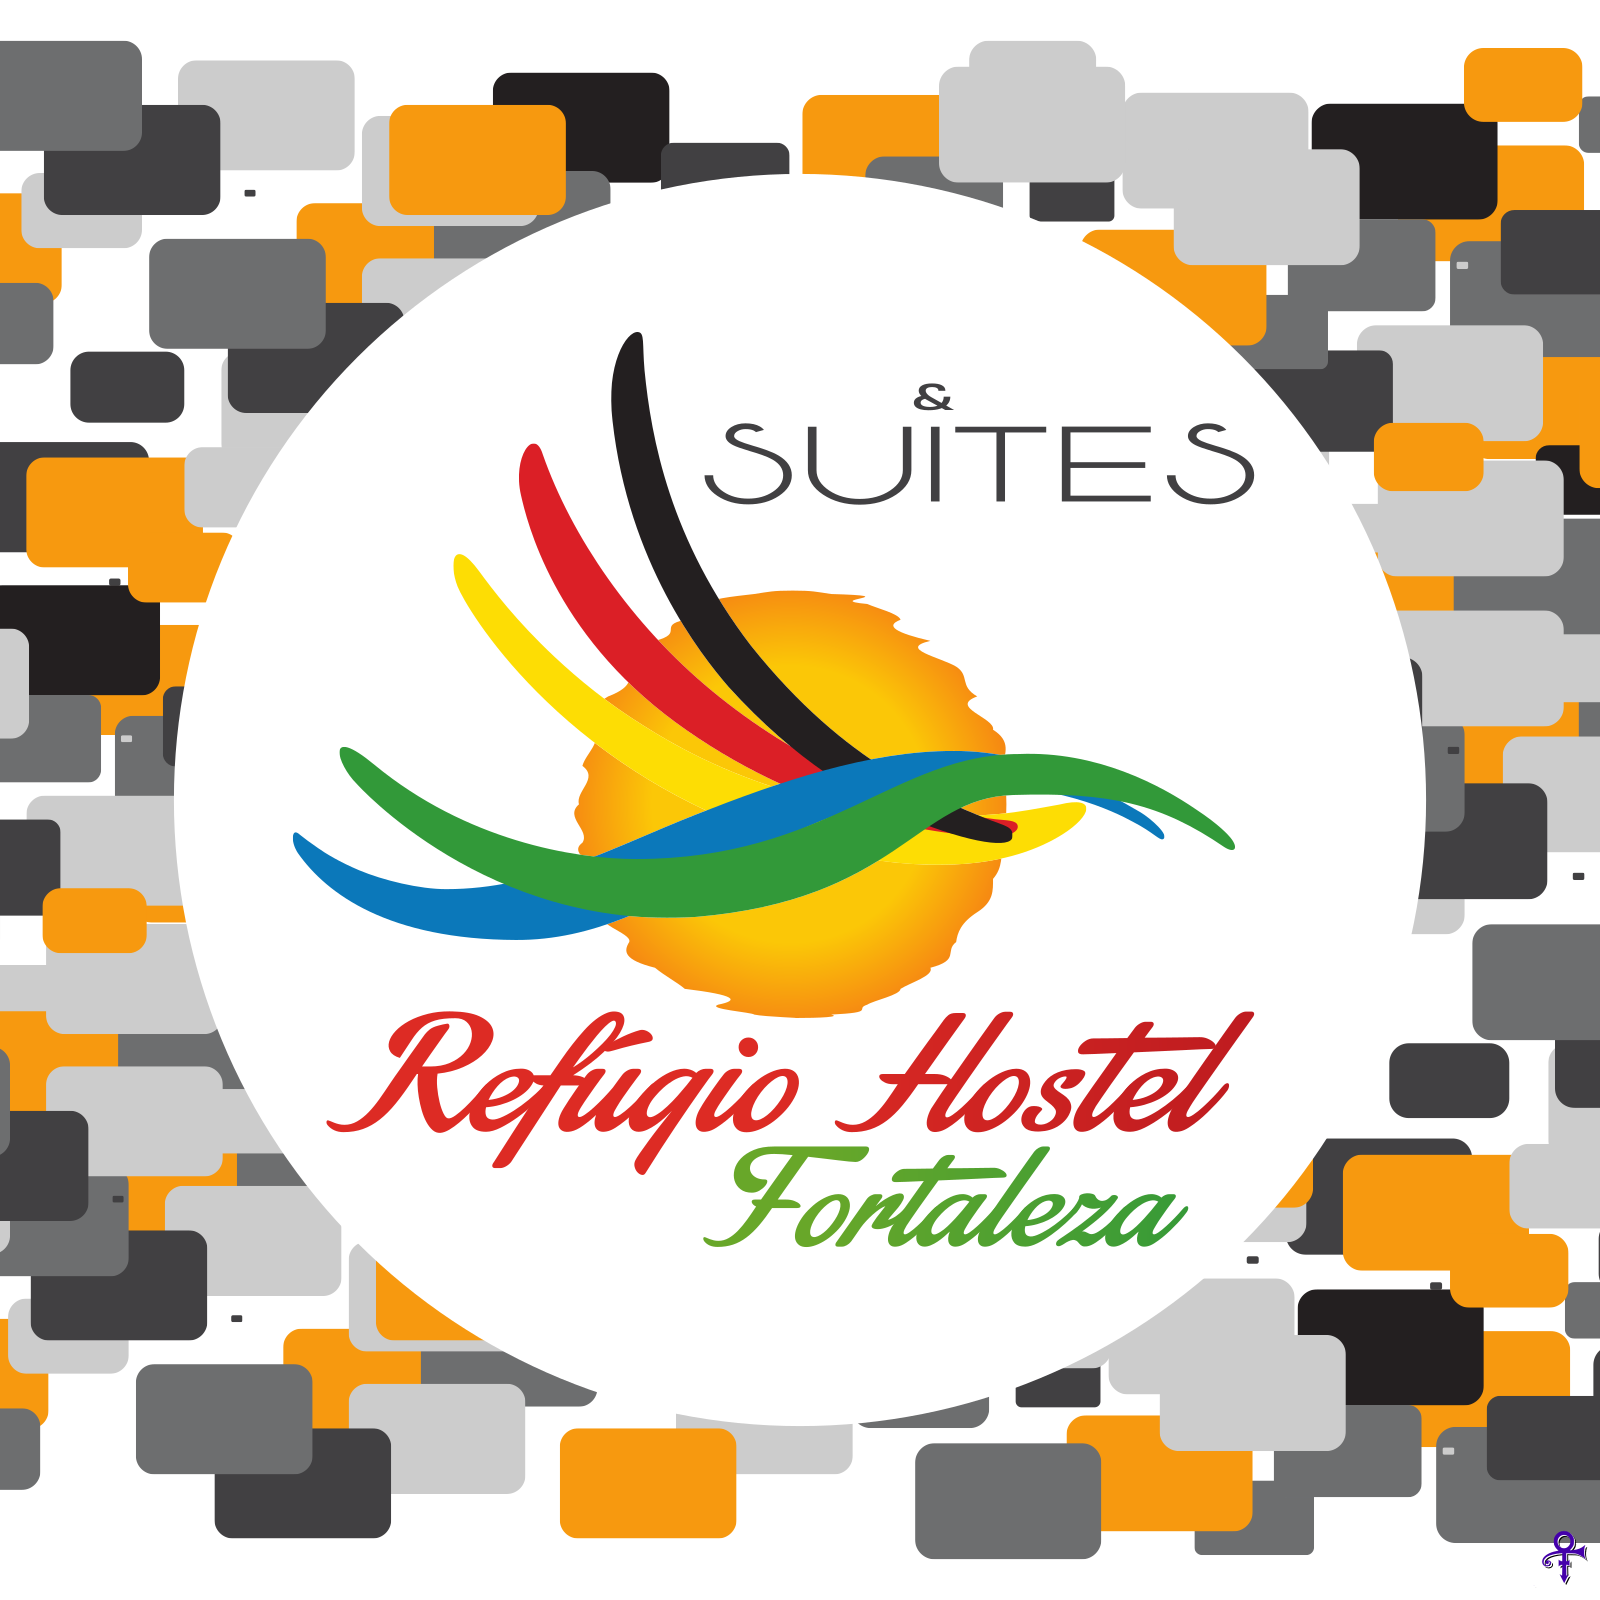 Logotipo Refúgio Hostel Fortaleza & Suítes